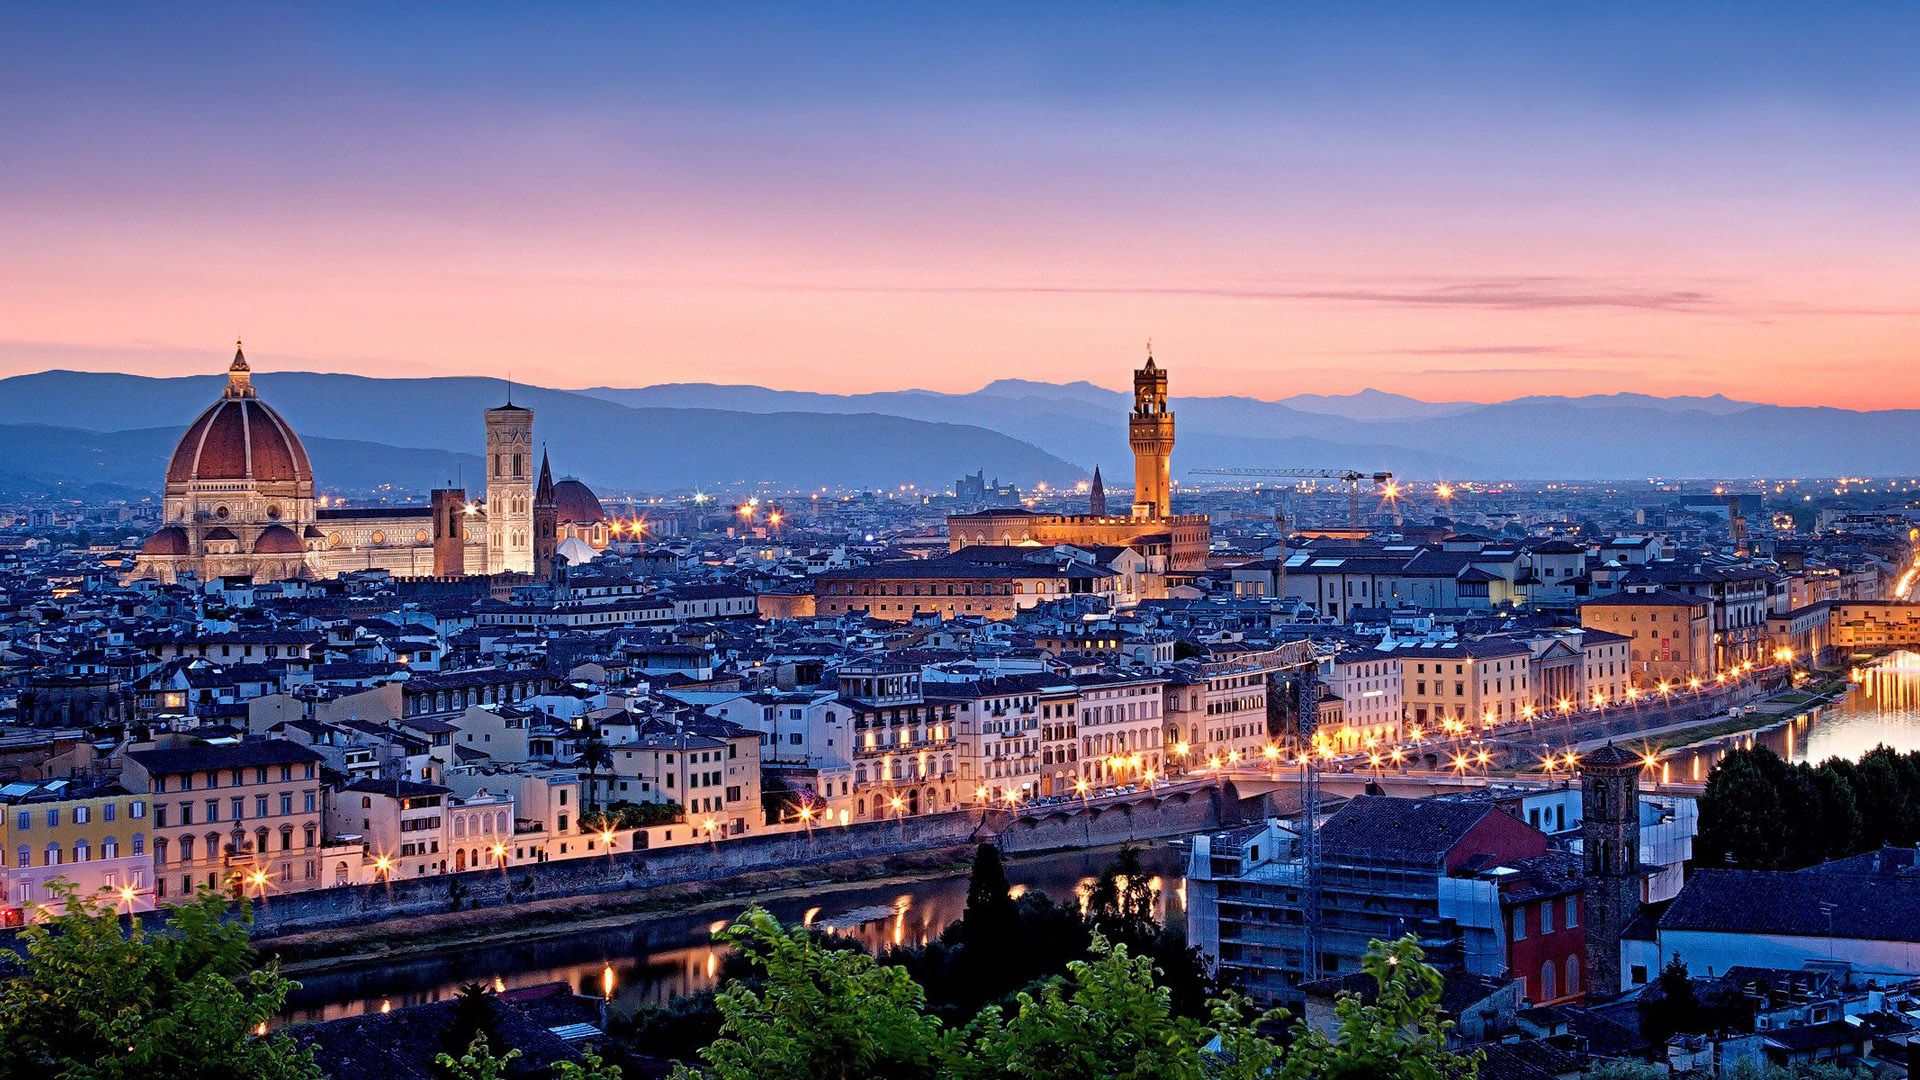 بک گراند قشنگ از ساختمان های بلند ایتالیا با کیفیت بالا 